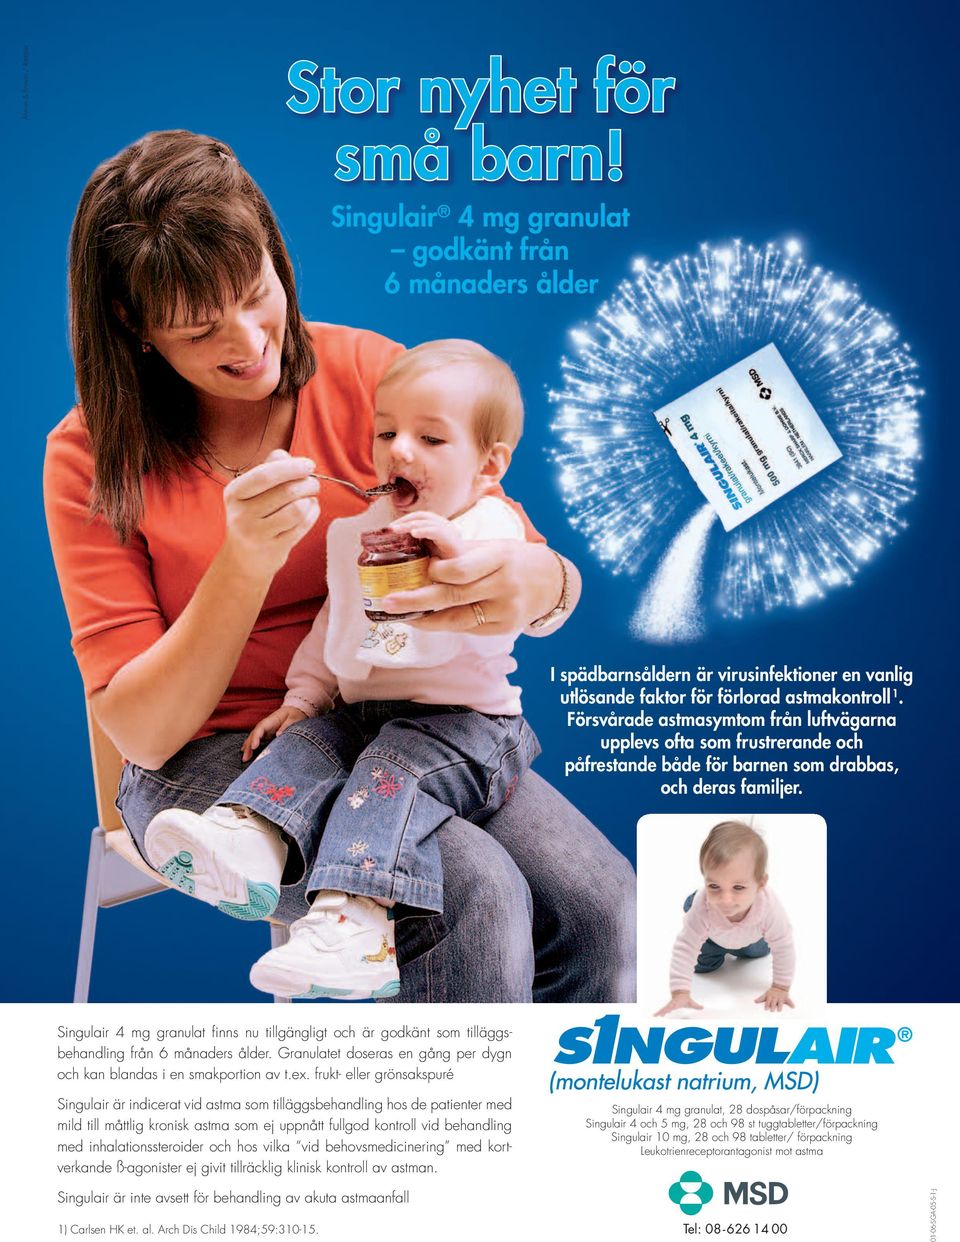 Singulair 4 mg granulat fi nns nu tillgängligt och är godkänt som tilläggsbehandling från 6 månaders ålder. Granulatet doseras en gång per dygn och kan blandas i en smakportion av t.ex.